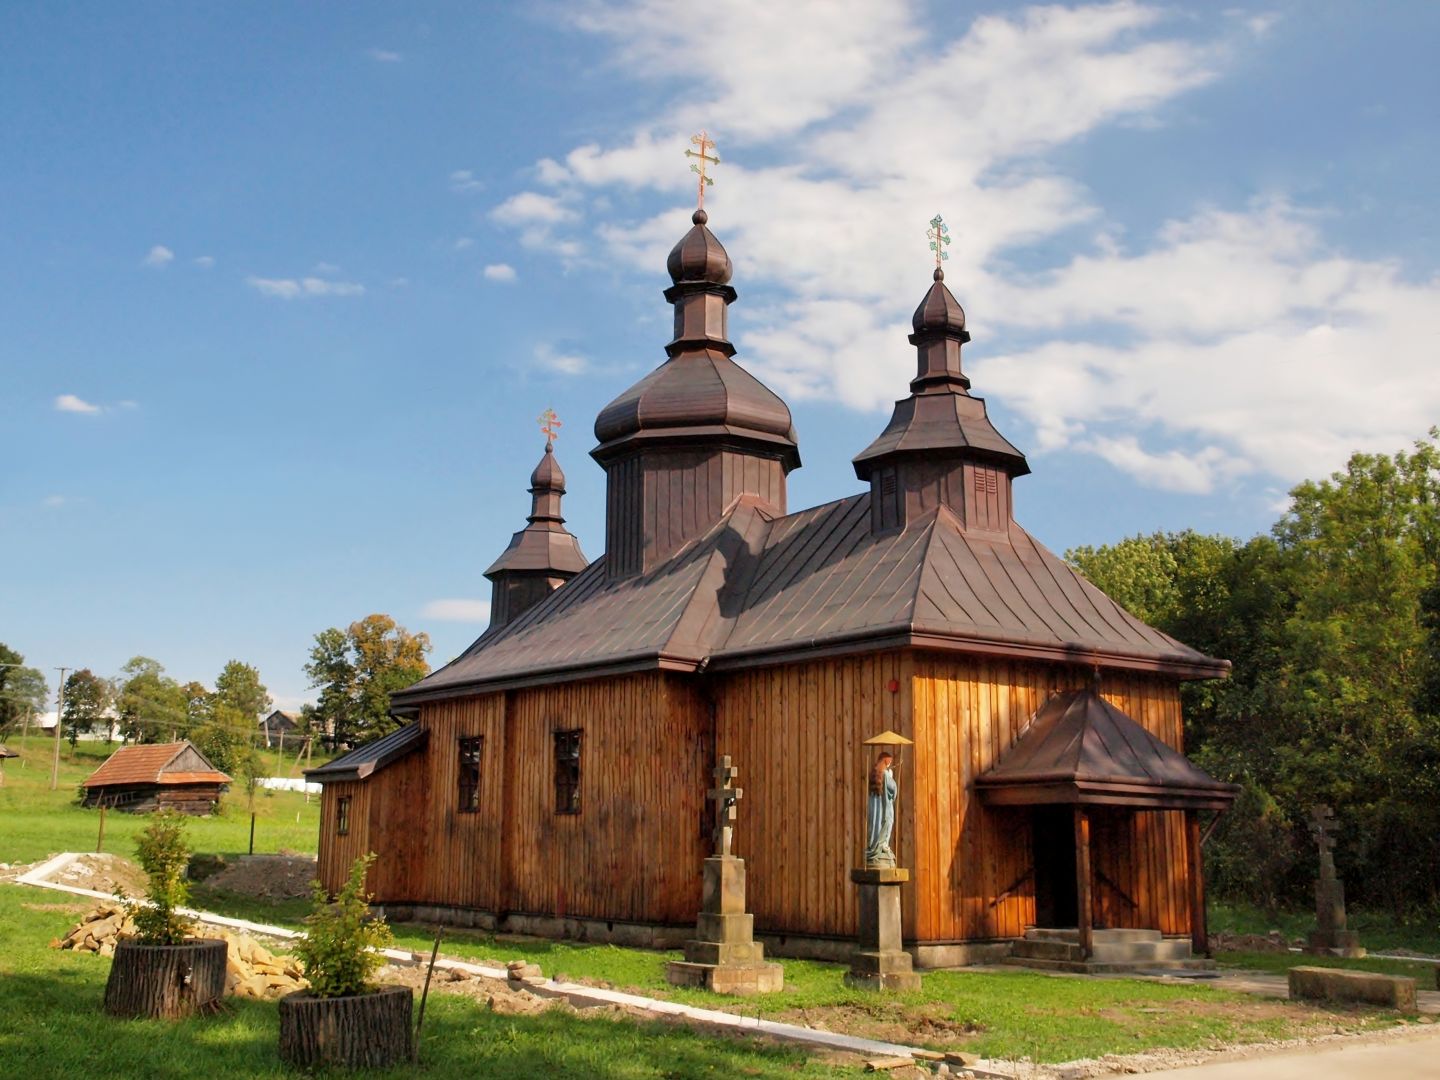 Cerkiew prawosławna z trzema wieżami